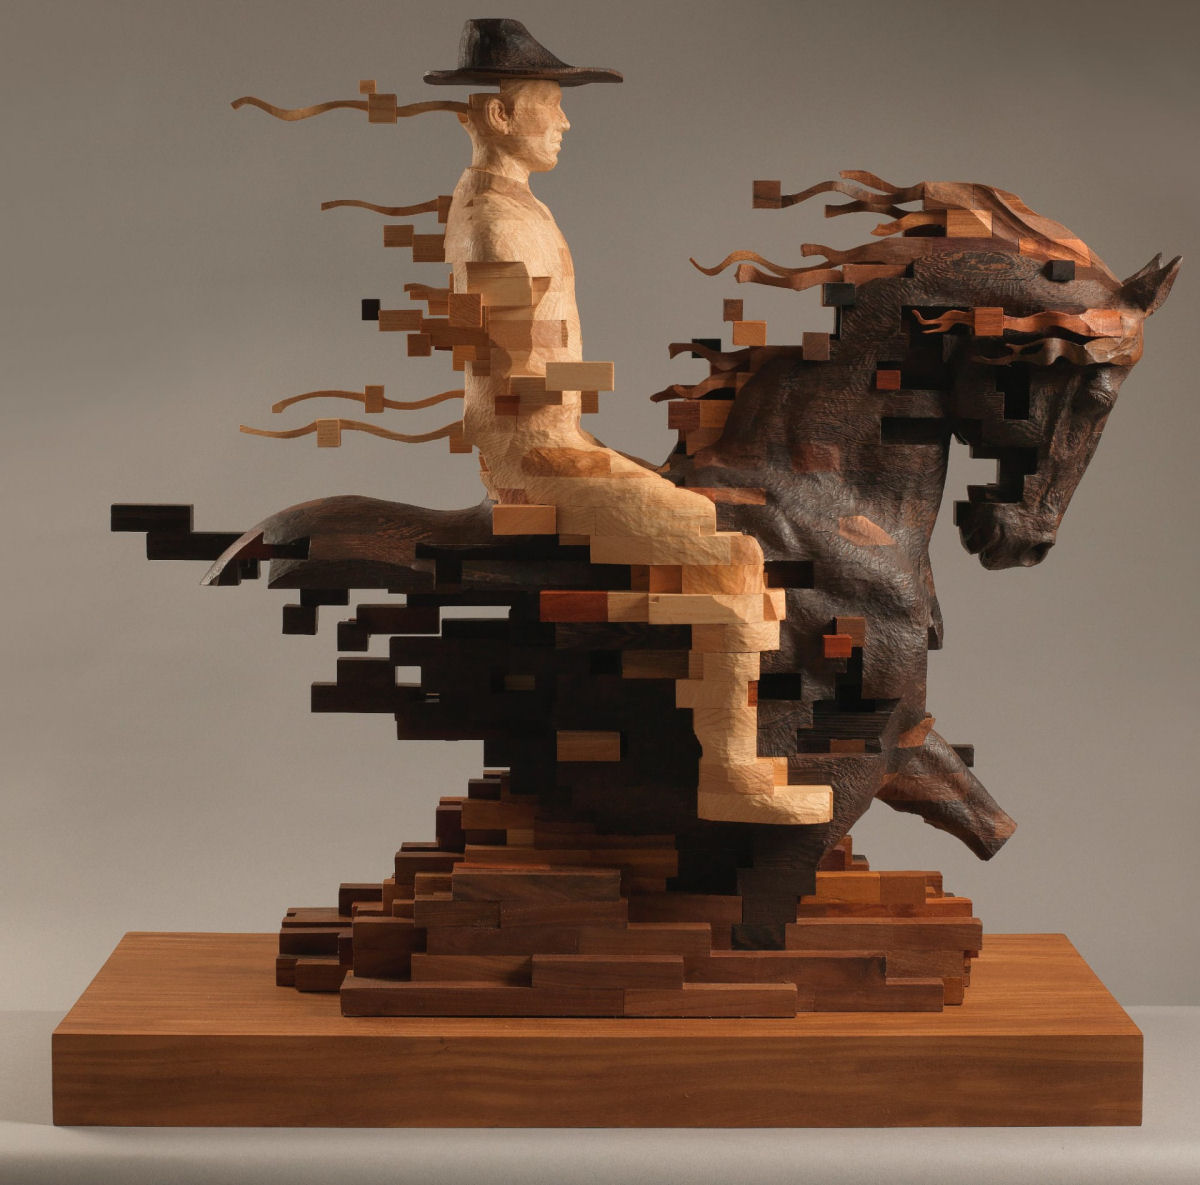 Esculturas figurativas parecem se fragmentar com pixels de madeira 01